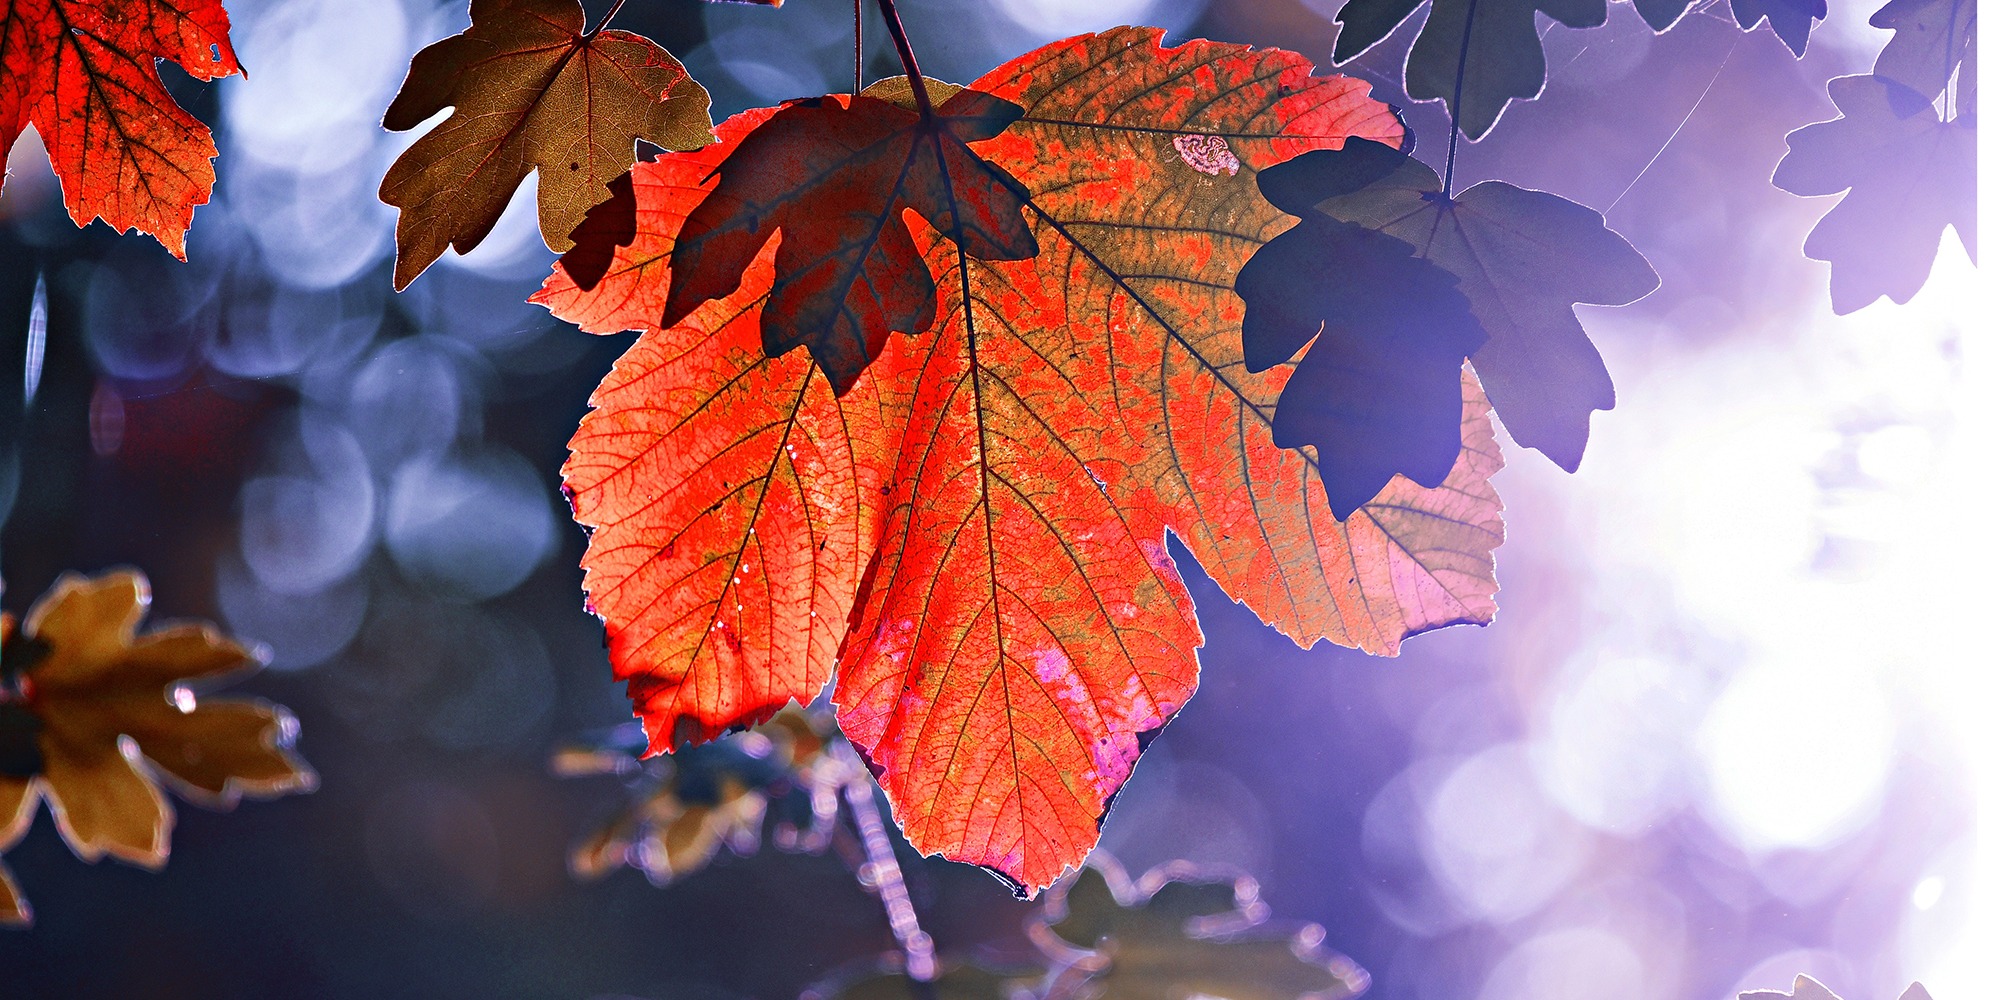 ett rött löv i motljus med mycket blått i luften runtomkring